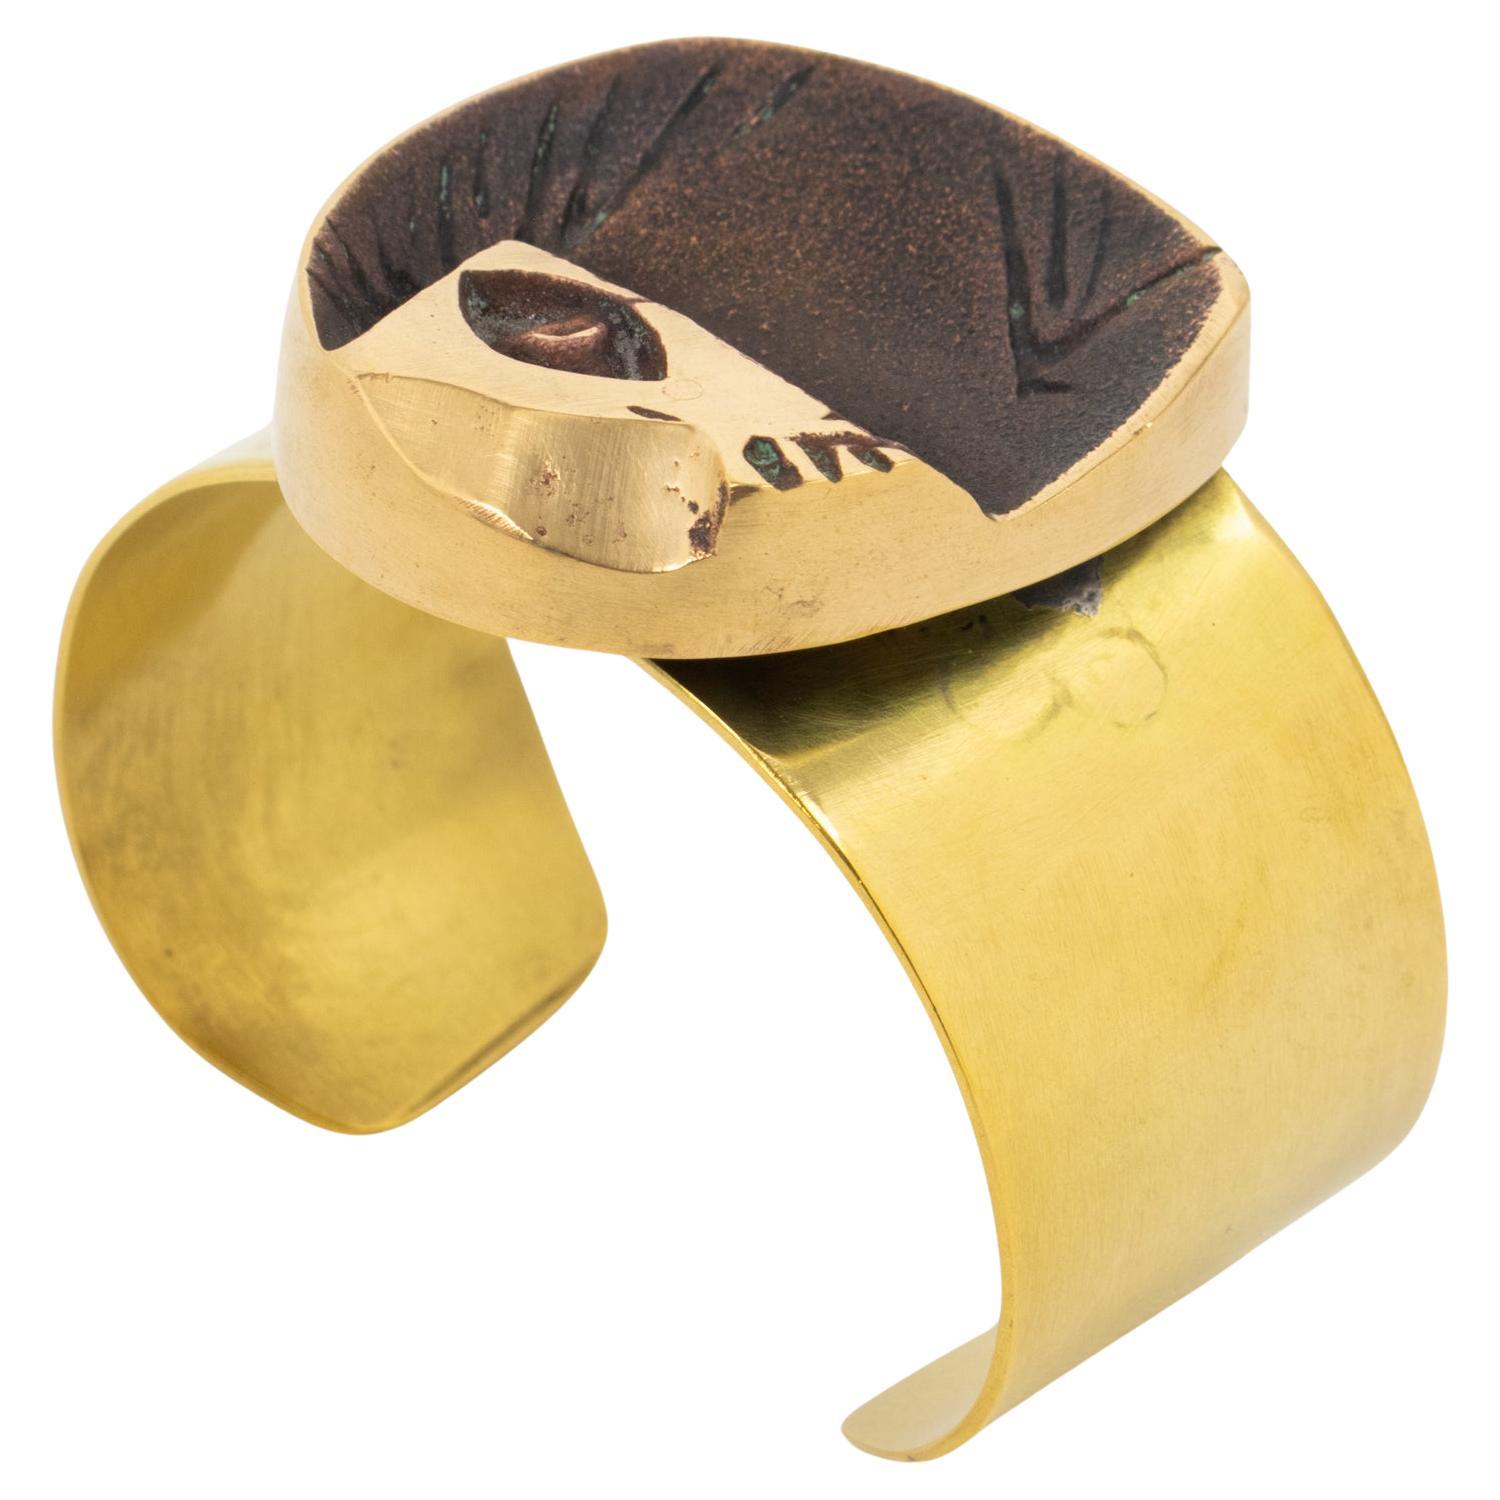 Le sculpteur et peintre français Henri Nogaret (1927 -) a créé ce bracelet manchette brutaliste sculptural en bronze et laiton dans les années 1960. Le grand bandeau en laiton est surmonté d'une sculpture abstraite moderniste en bronze doré. La